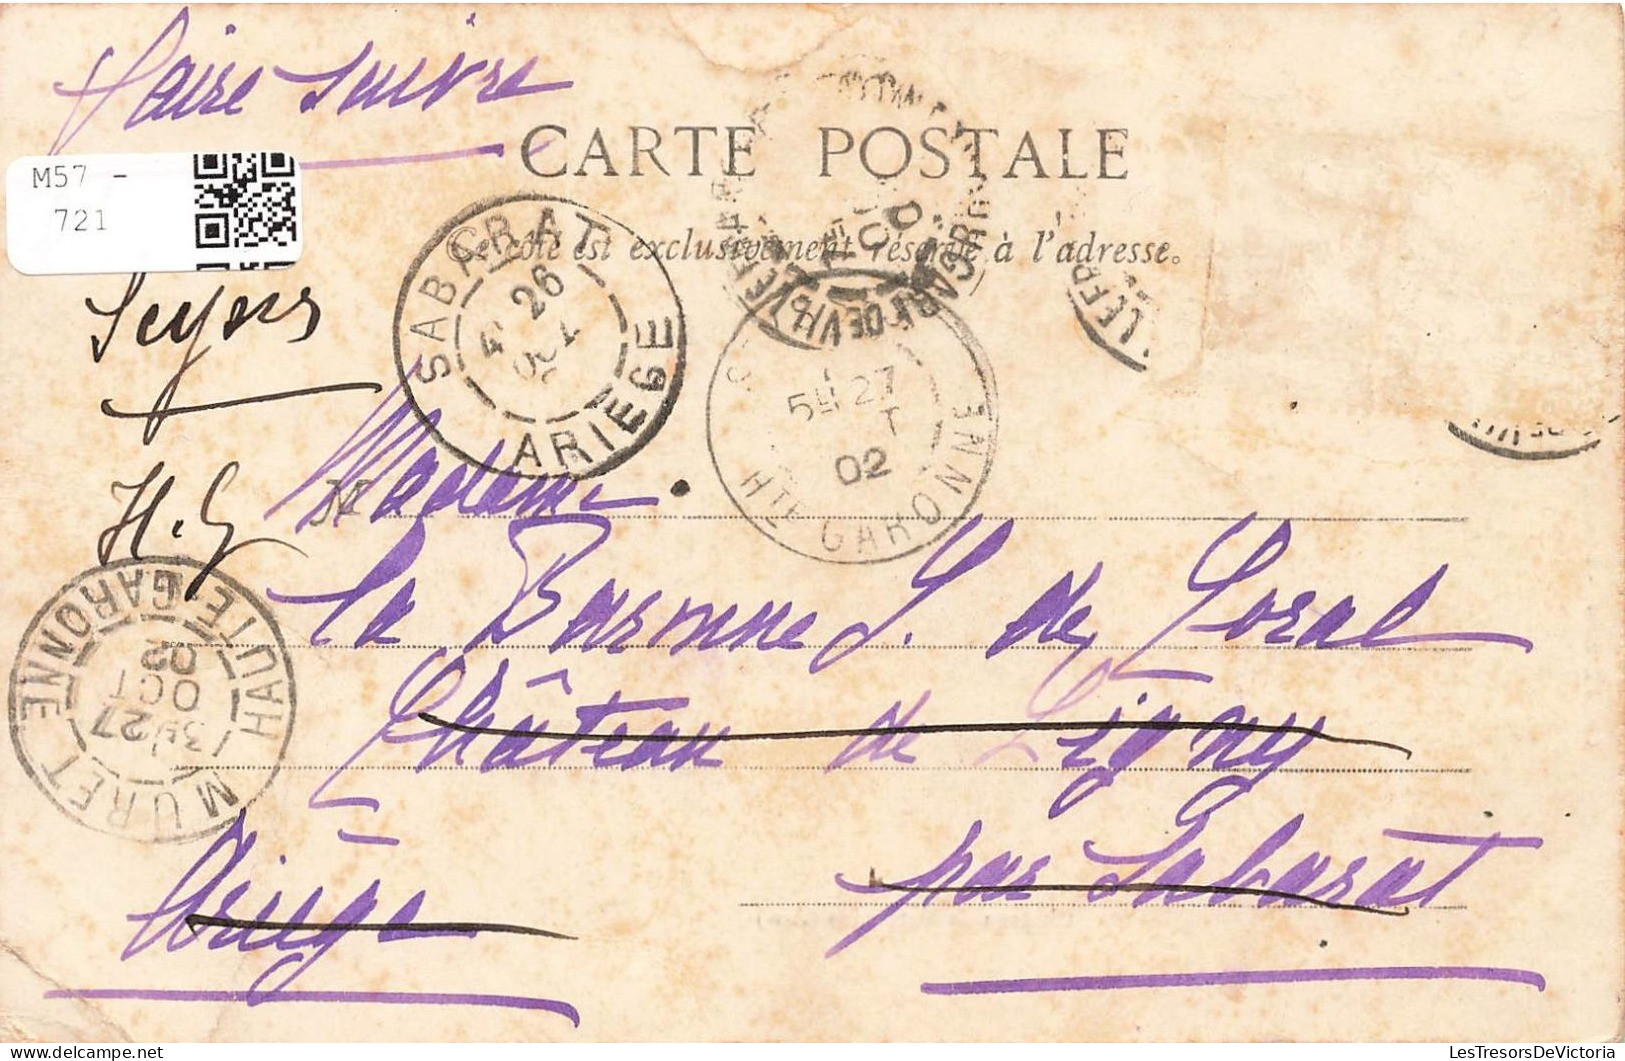 FRANCE - Francheleins - Château De Vataneins - Carte Postale Ancienne - Zonder Classificatie